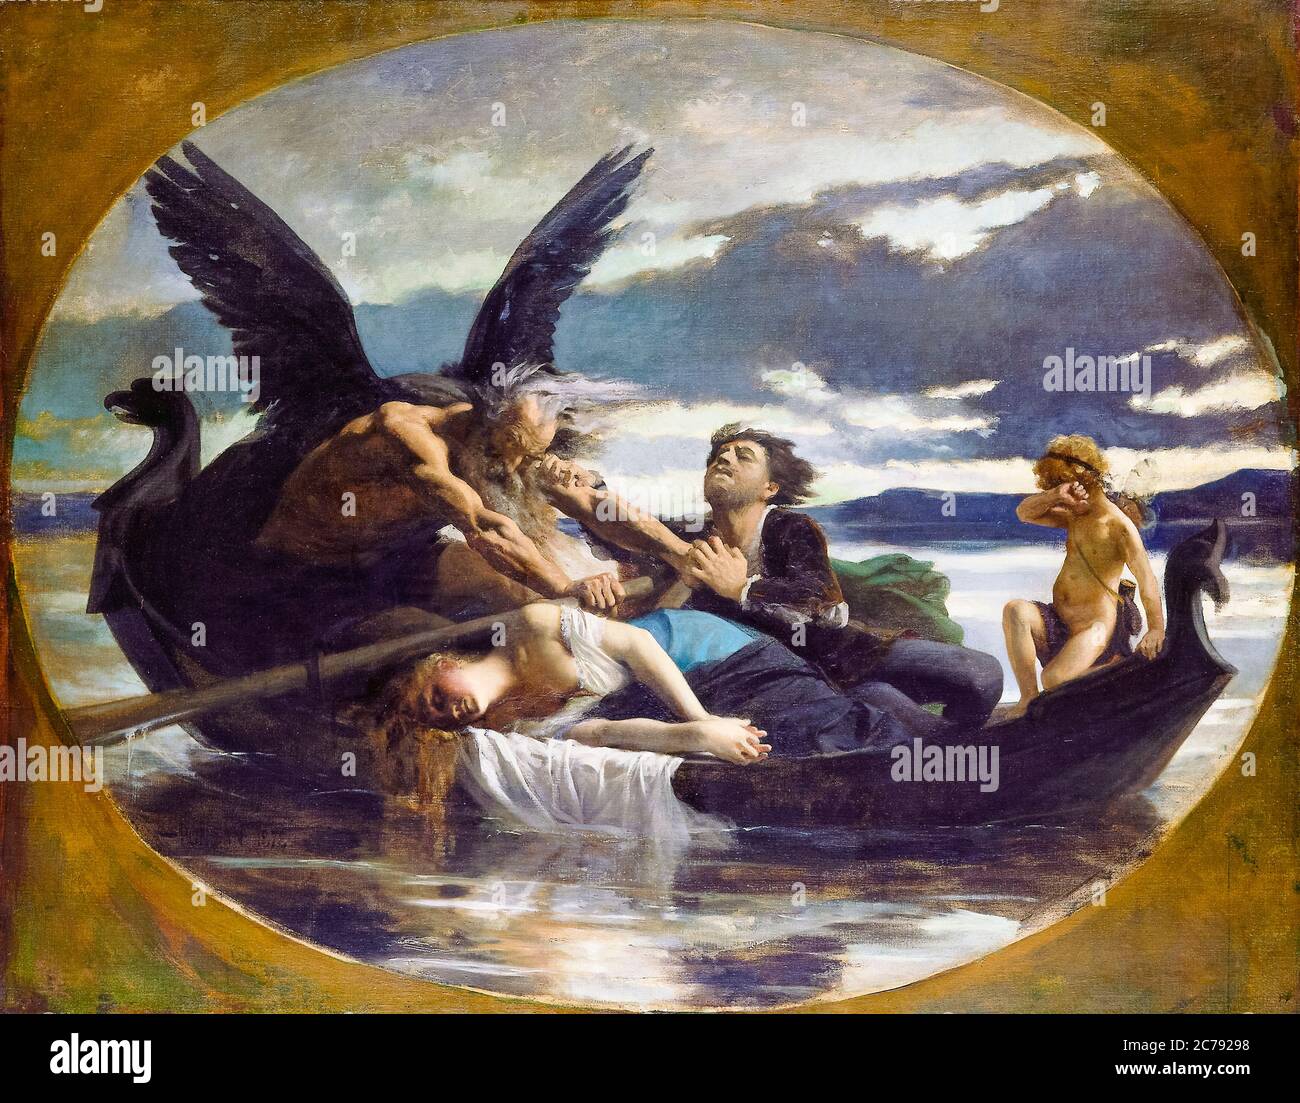 L'amour meurt dans le temps, peinture d'Édouard Debat-Ponsan, 1878 Banque D'Images